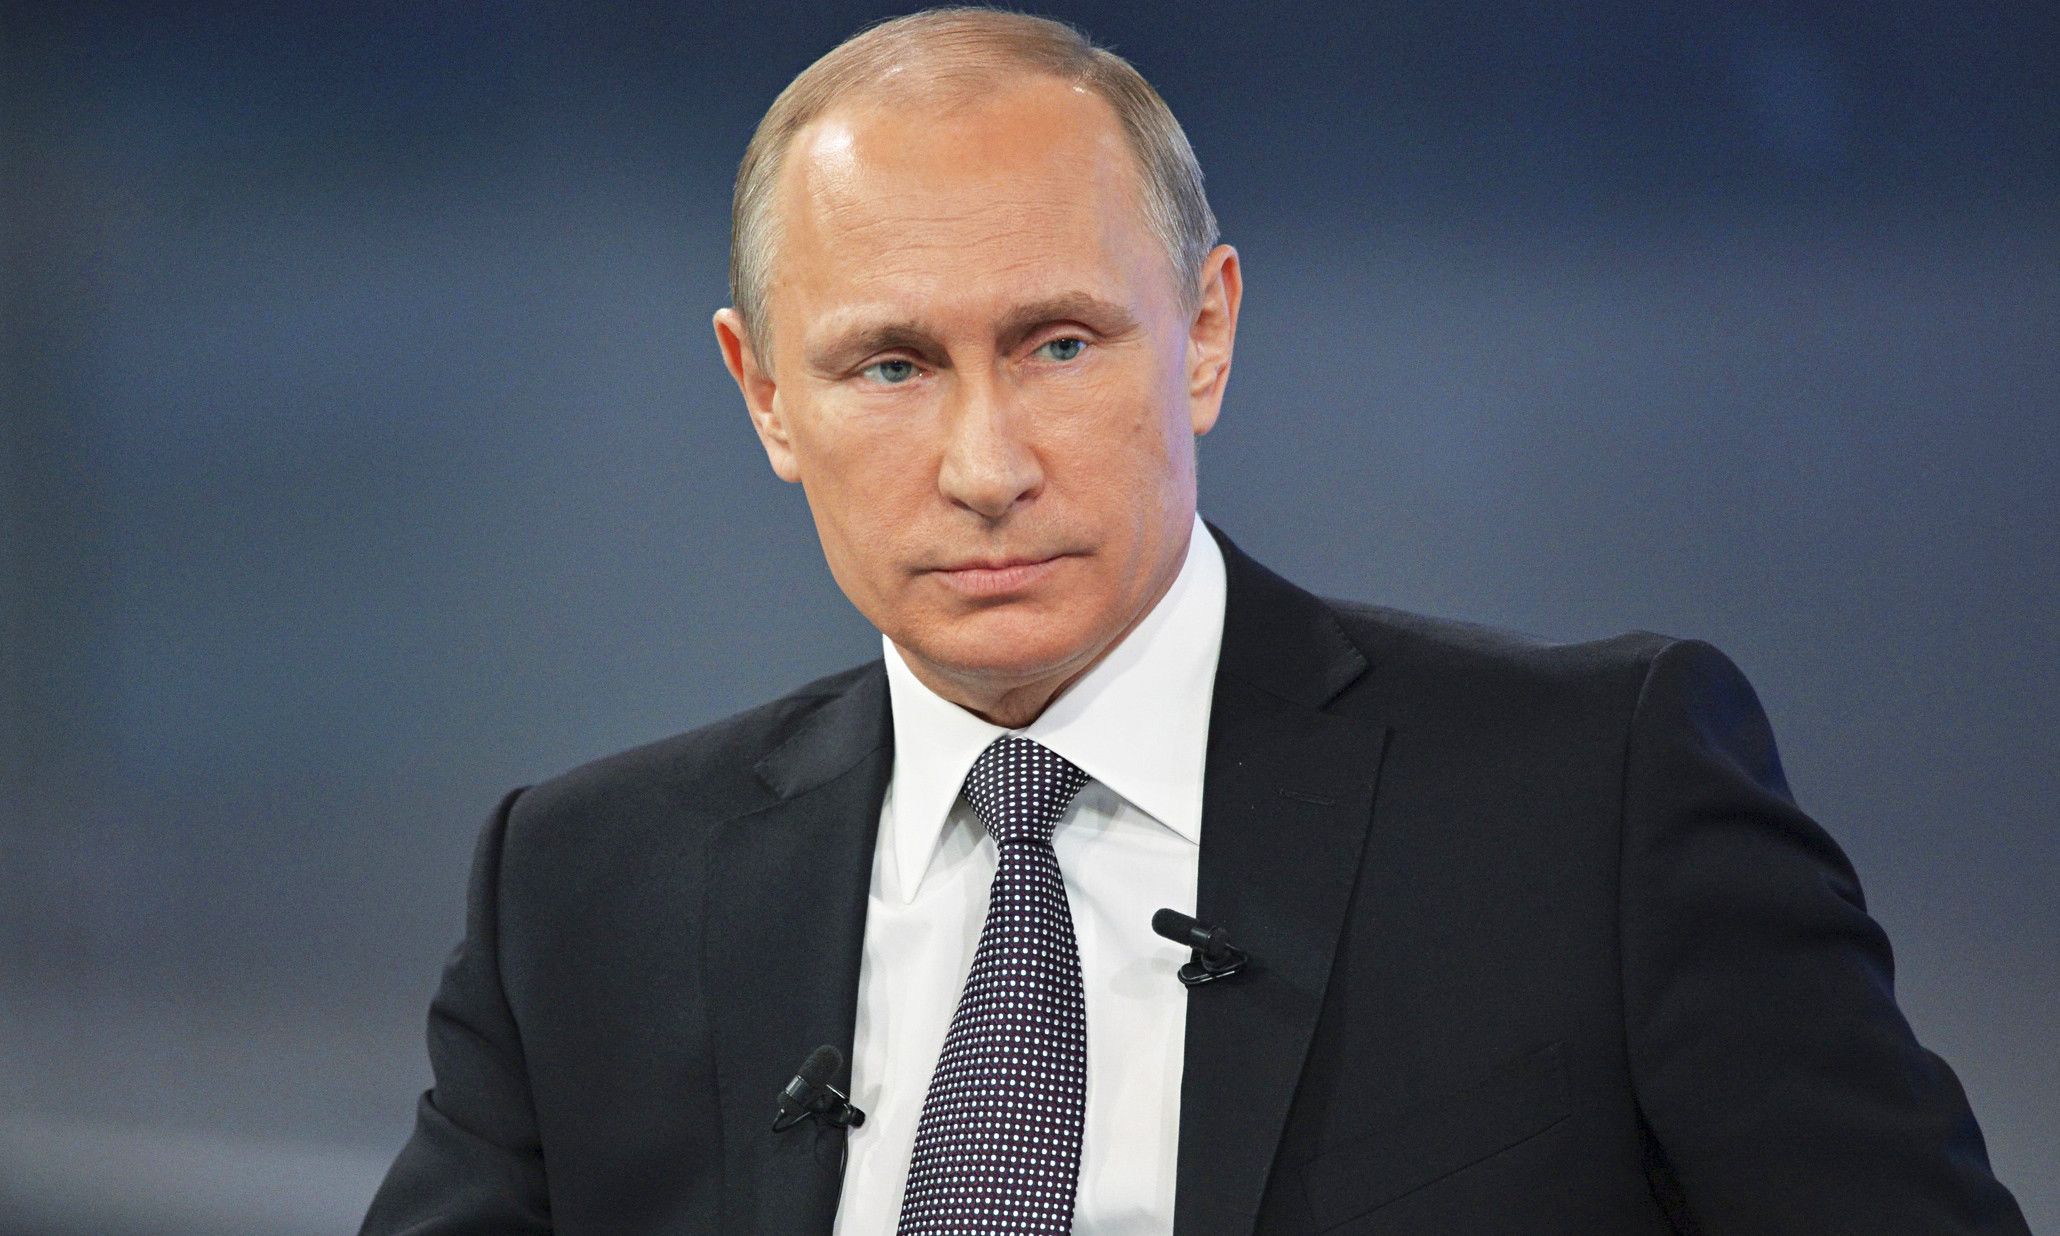 Sebaizolácia nie je náhodná: Inštitút Roberta Lansinga odhalil Putinov zhoršujúci sa zdravotný stav a nevyhnutné dôsledky pre krajinu